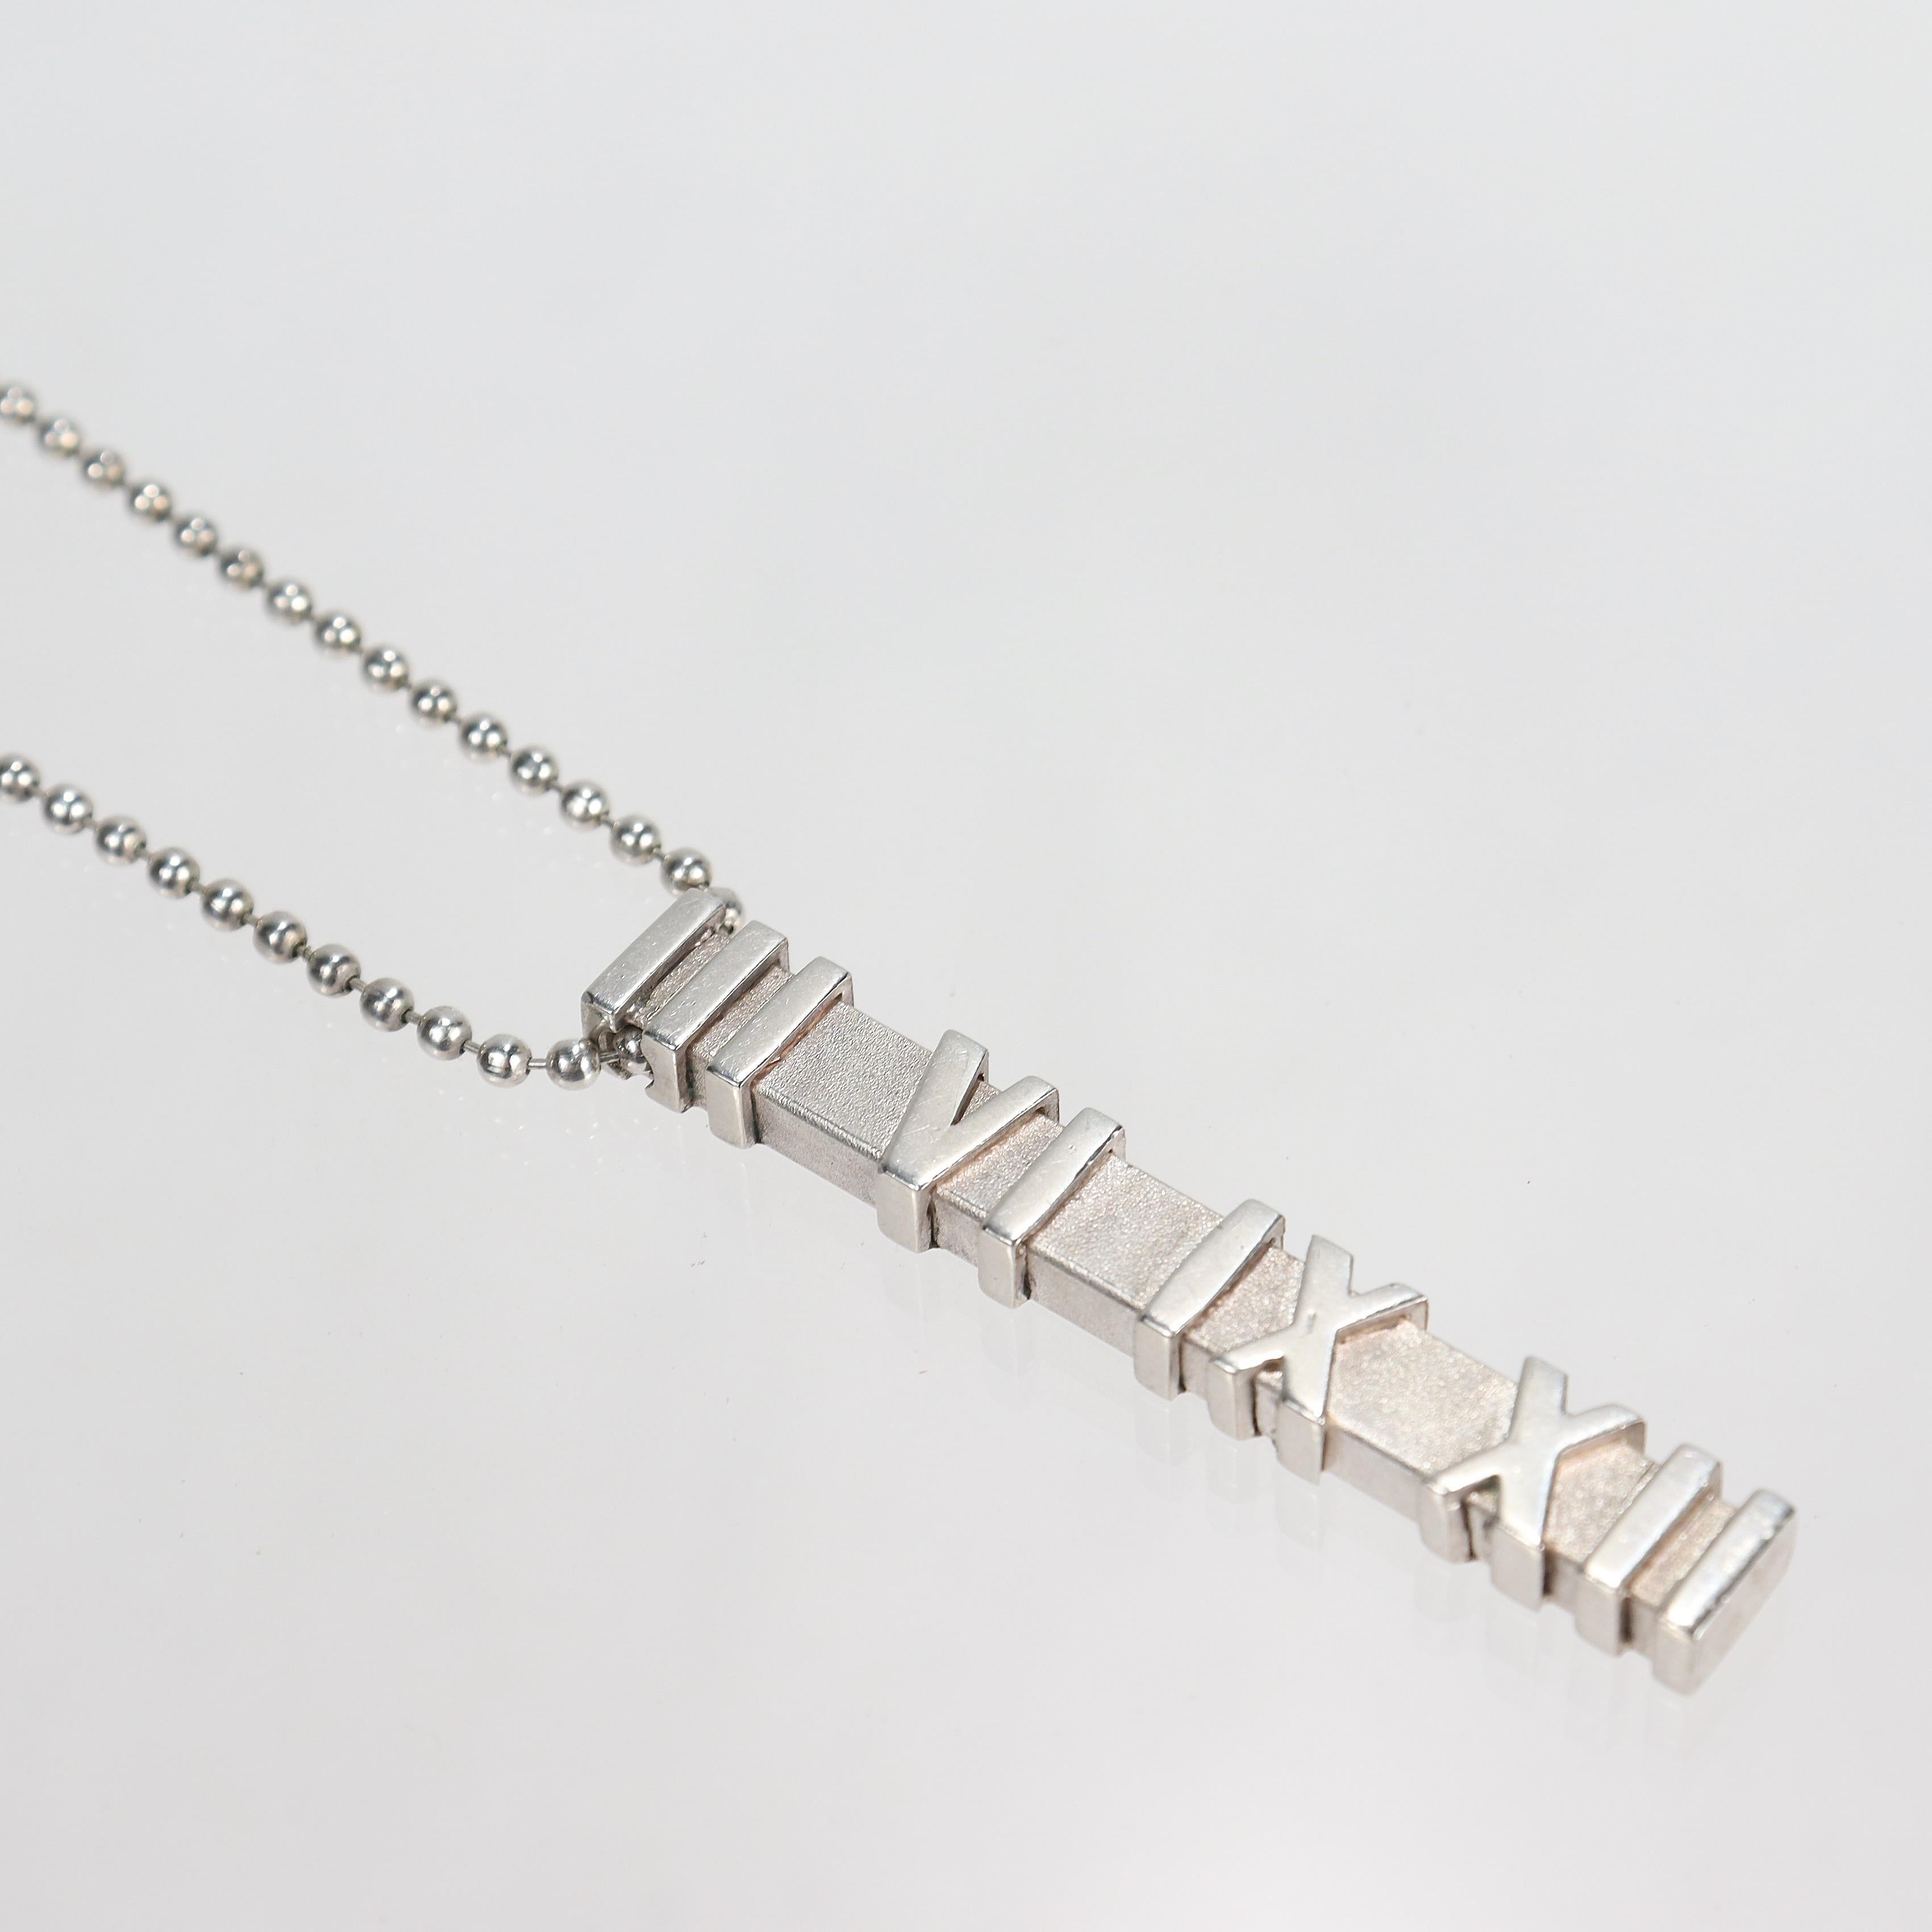 Un collier avec pendentif et chaîne en forme de plaque d'identité de la collection Atlas.

Par Tiffany & Co. 

En argent sterling.

La collection 